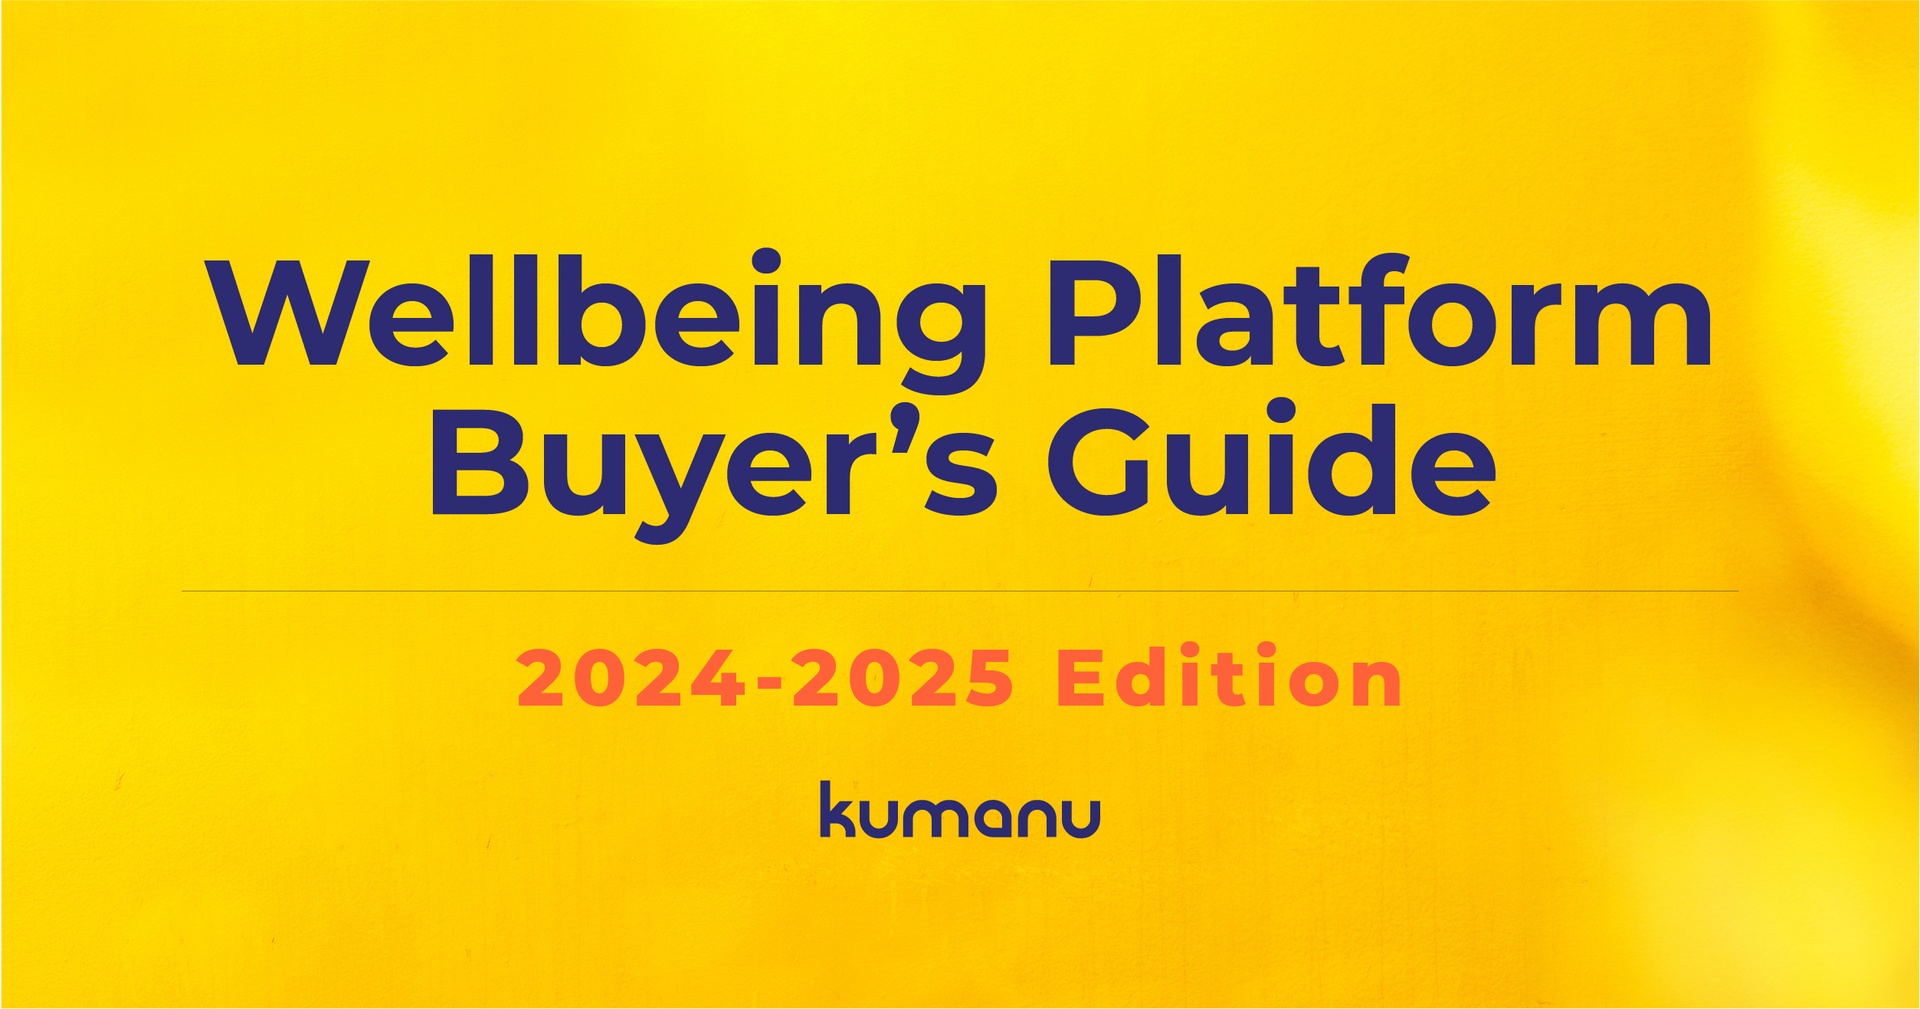 Wellbeing Platform Buyer's Gude 2024-2025 Edition Kumanu